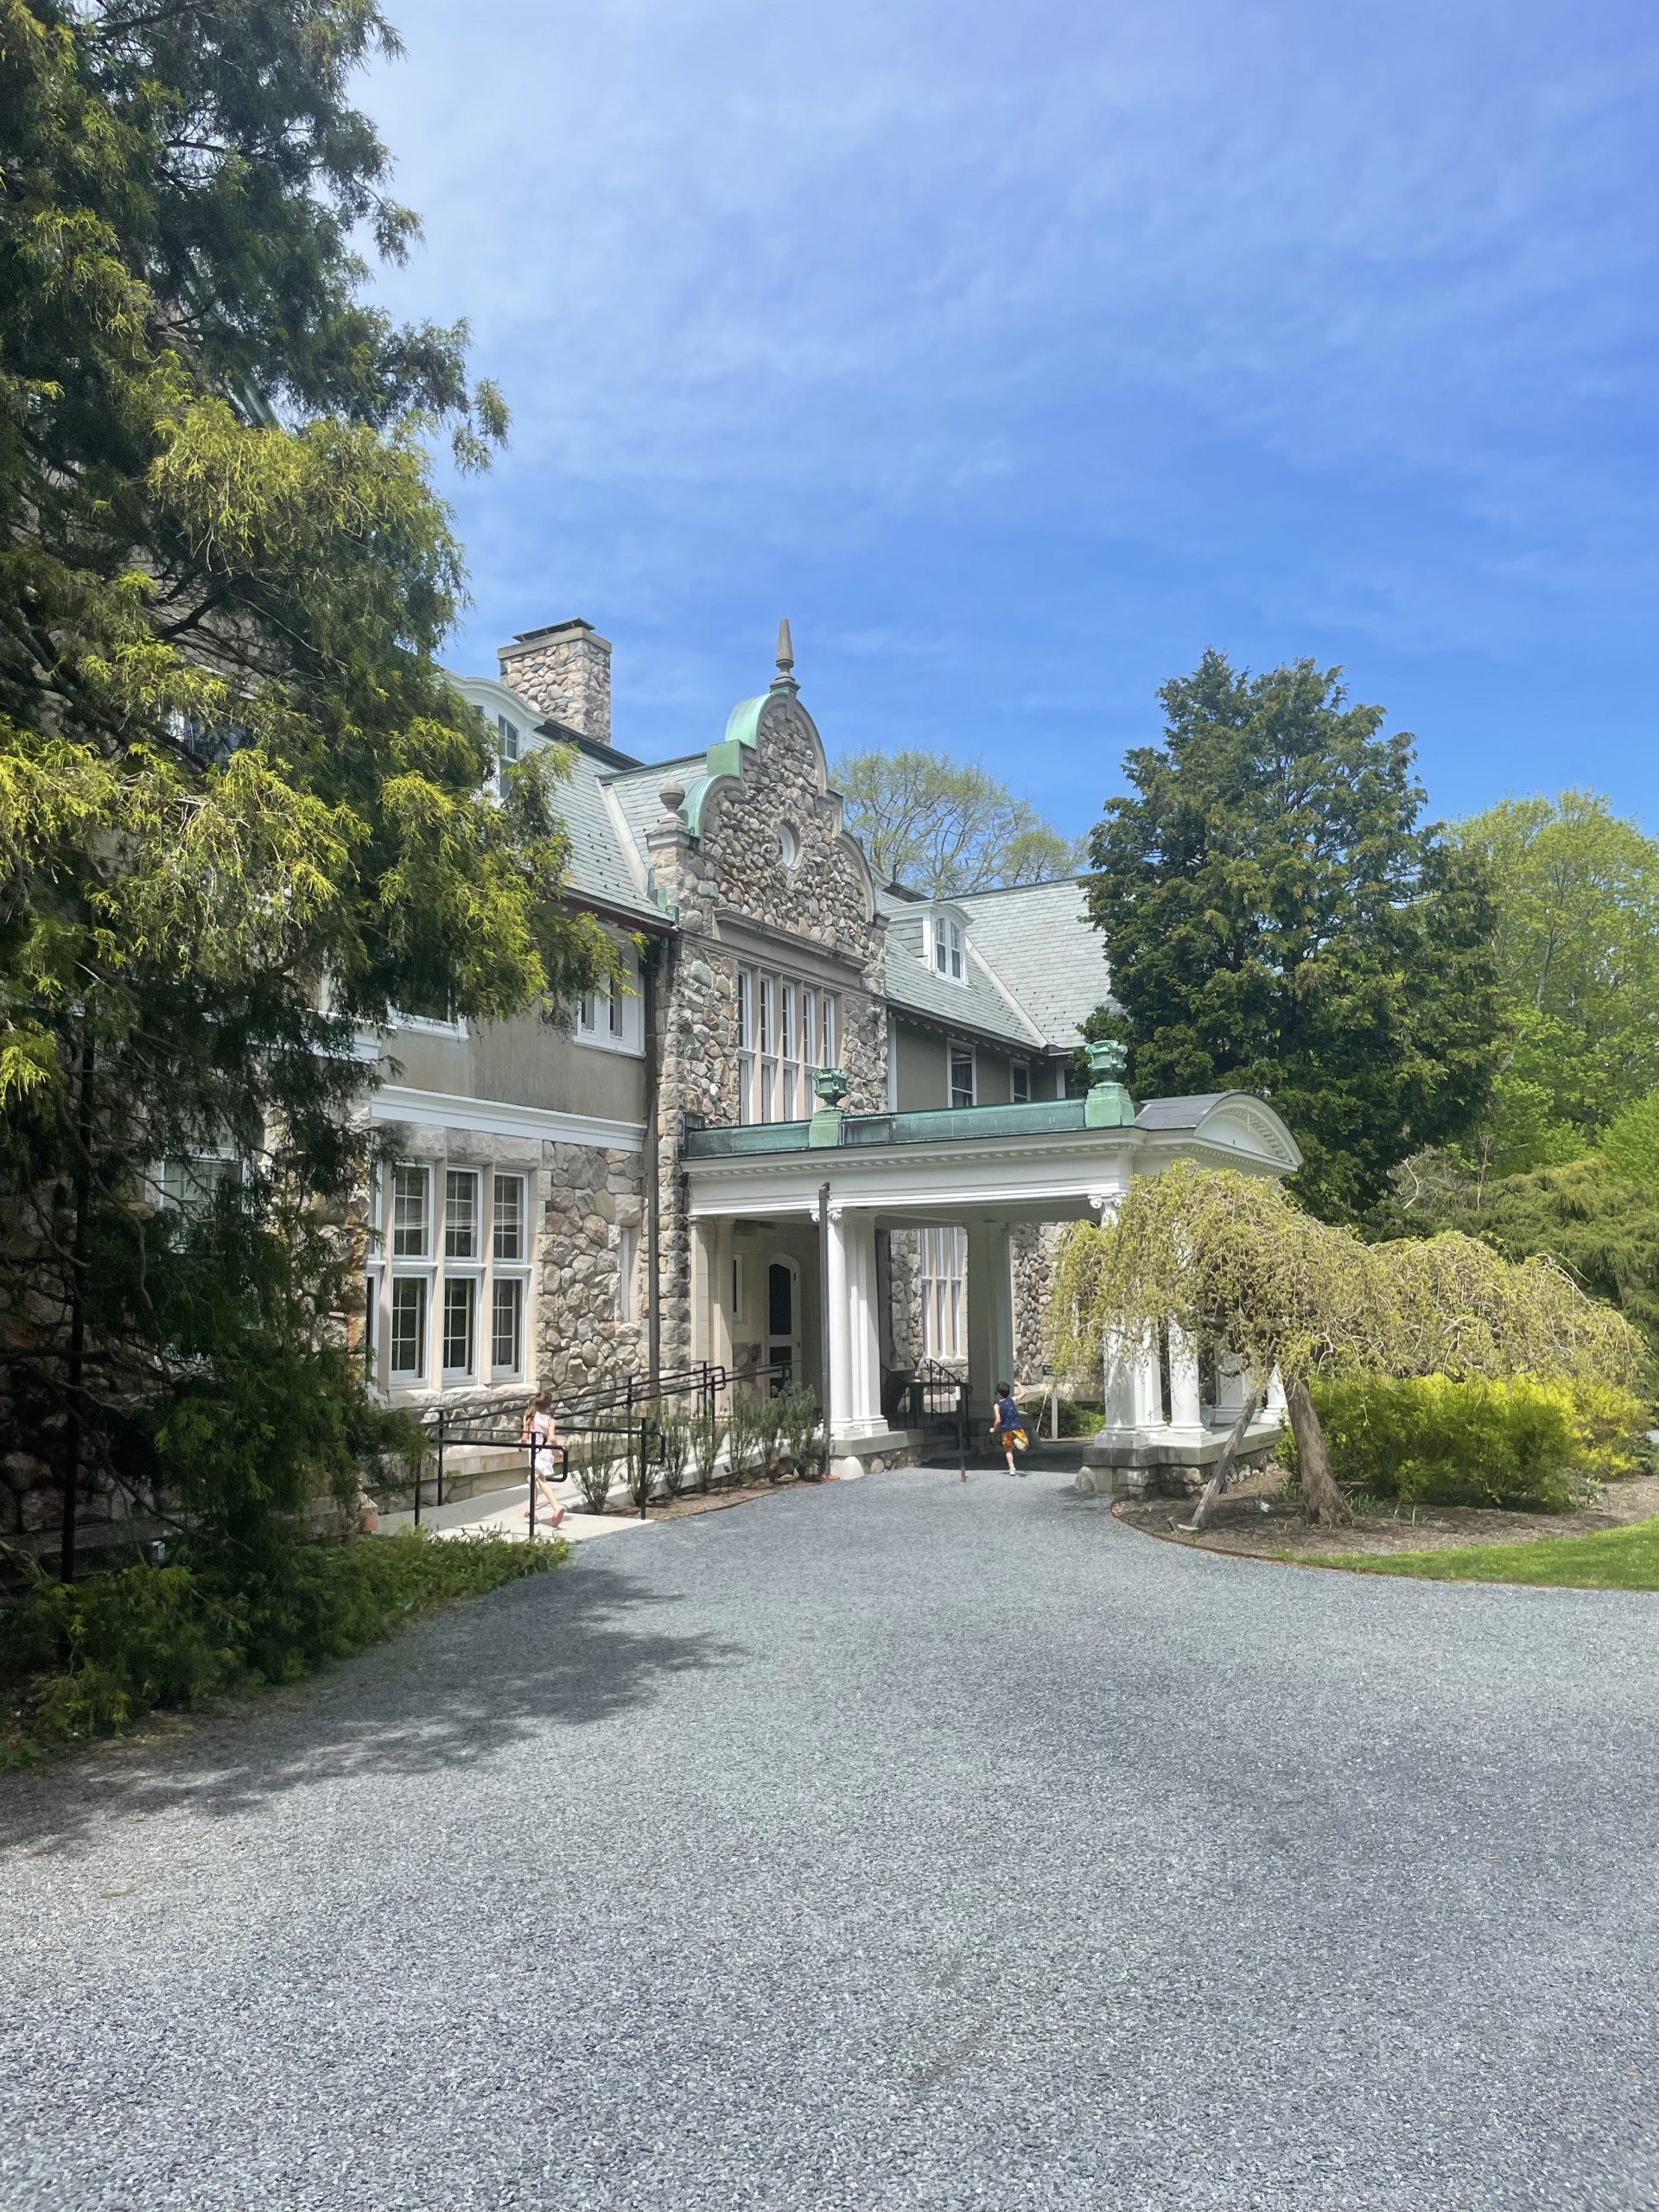  Blithewold Mansion in Bristol Rhode Island with kids